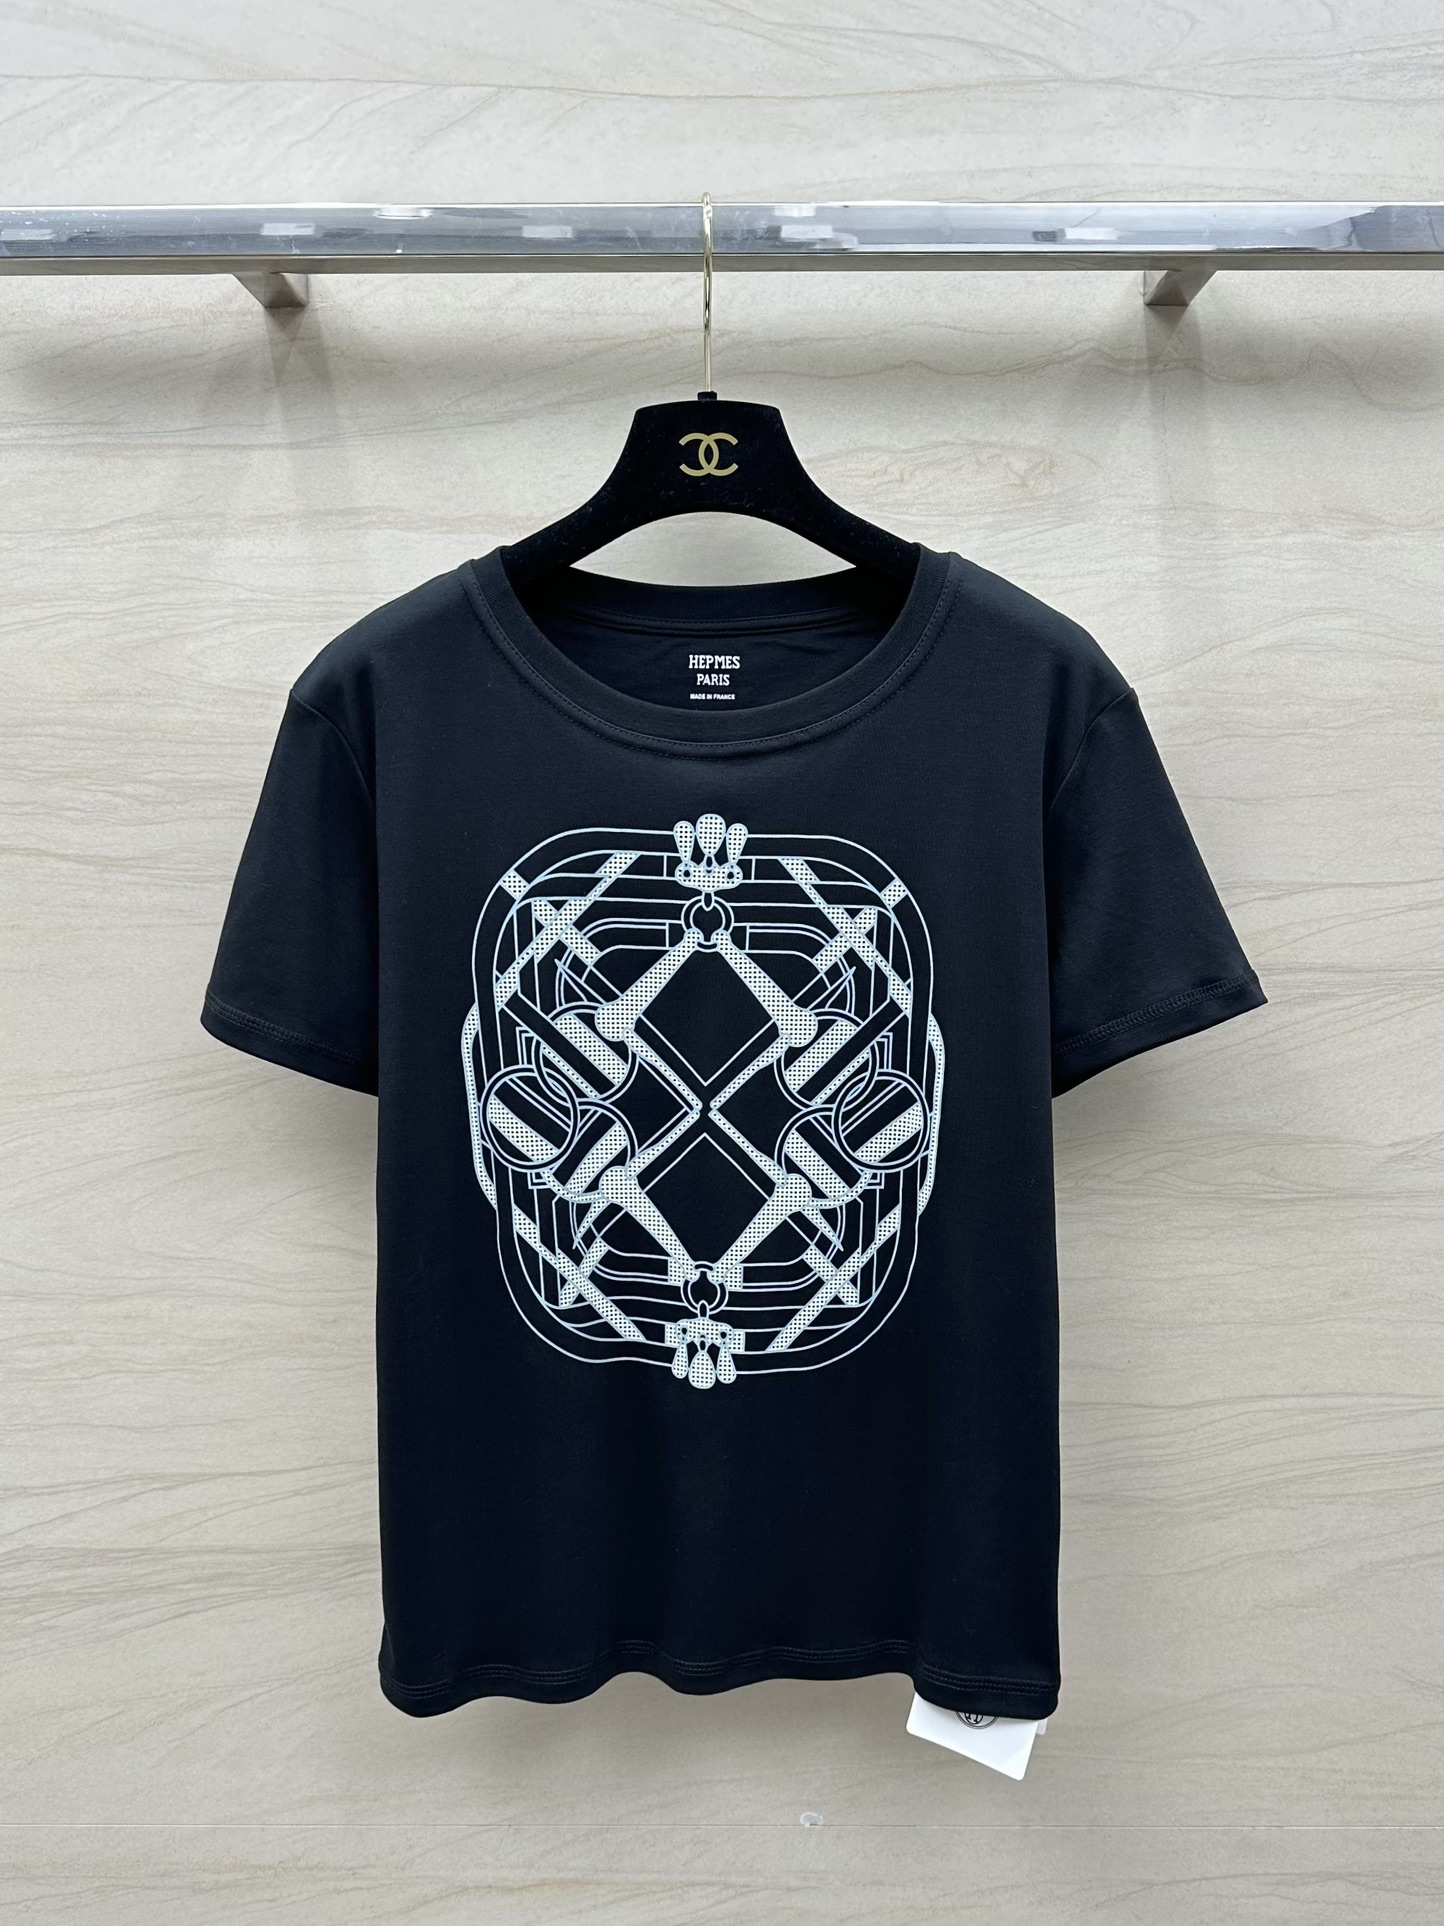 Principal
 Hermes Roupa Camiseta Alta qualidade personalizada
 Impressão Algodão Colecção Primavera/Verão